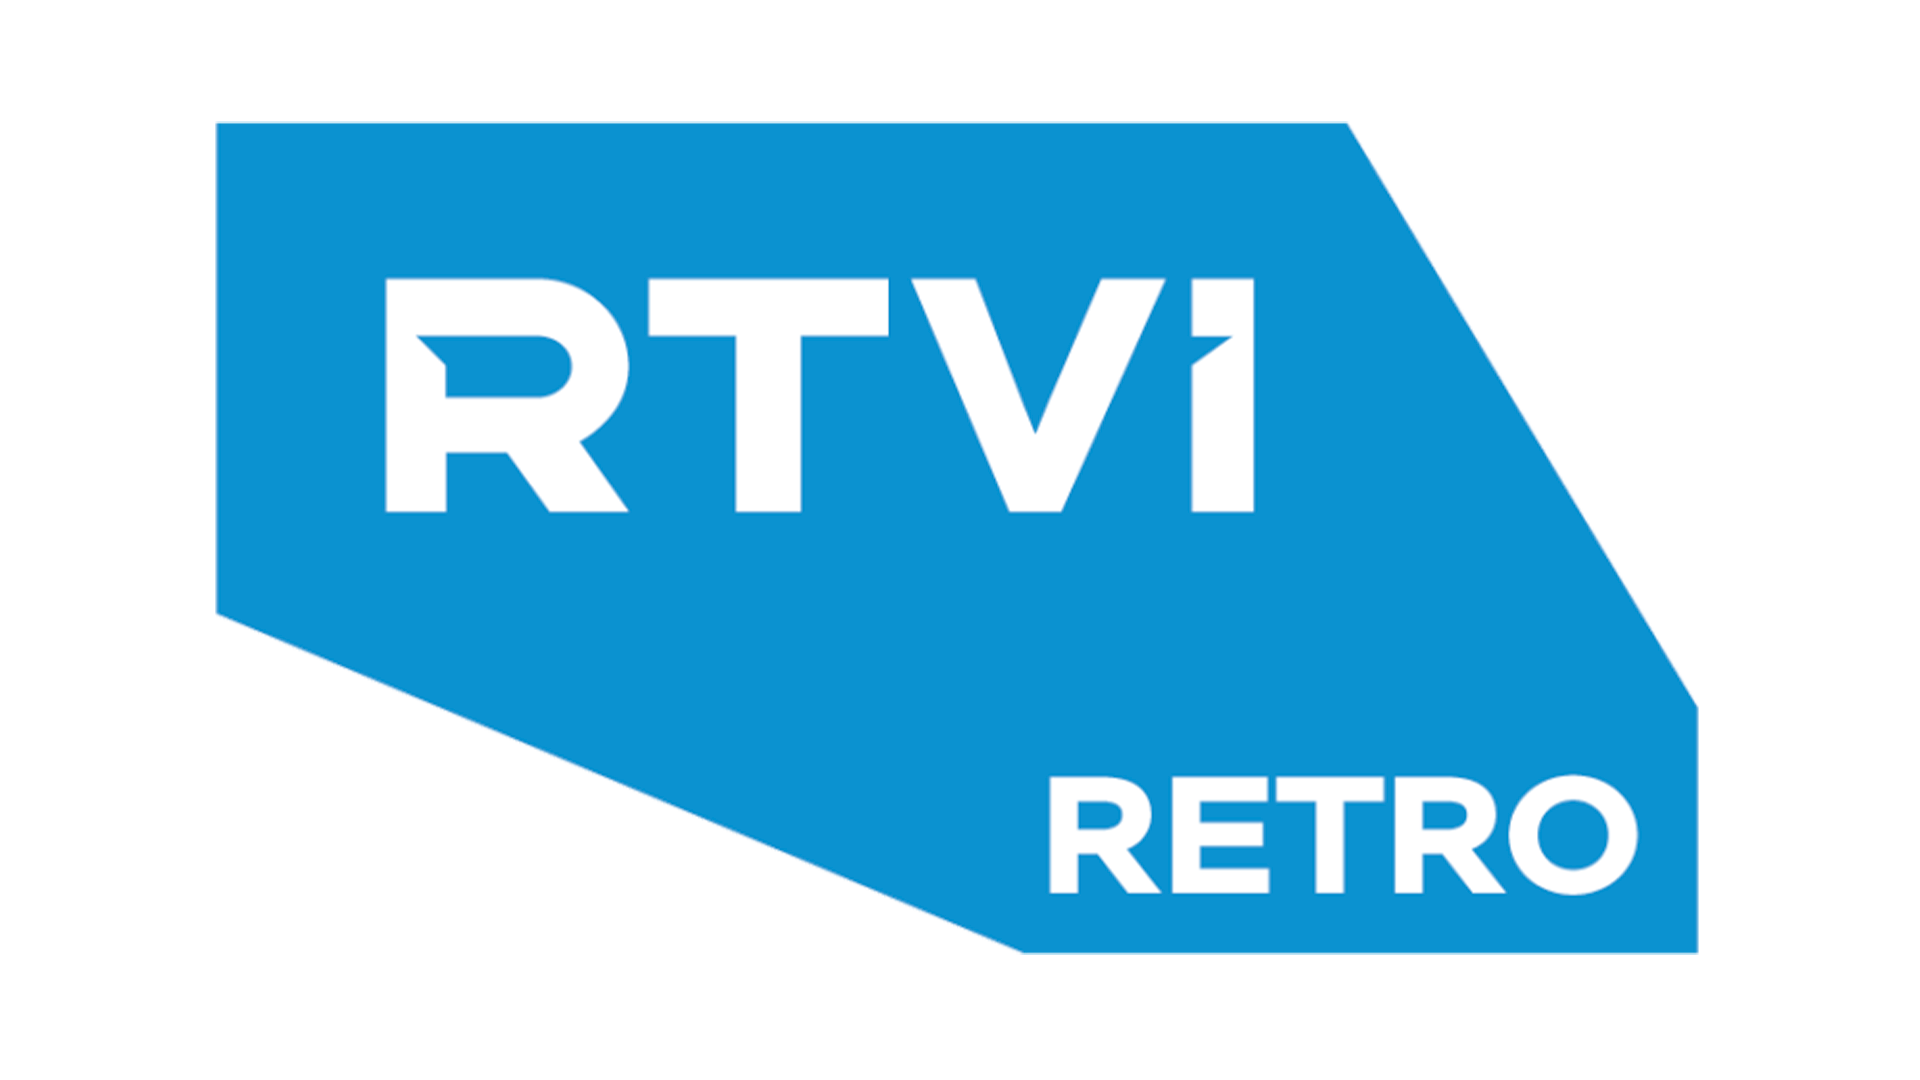 RTVI Retro